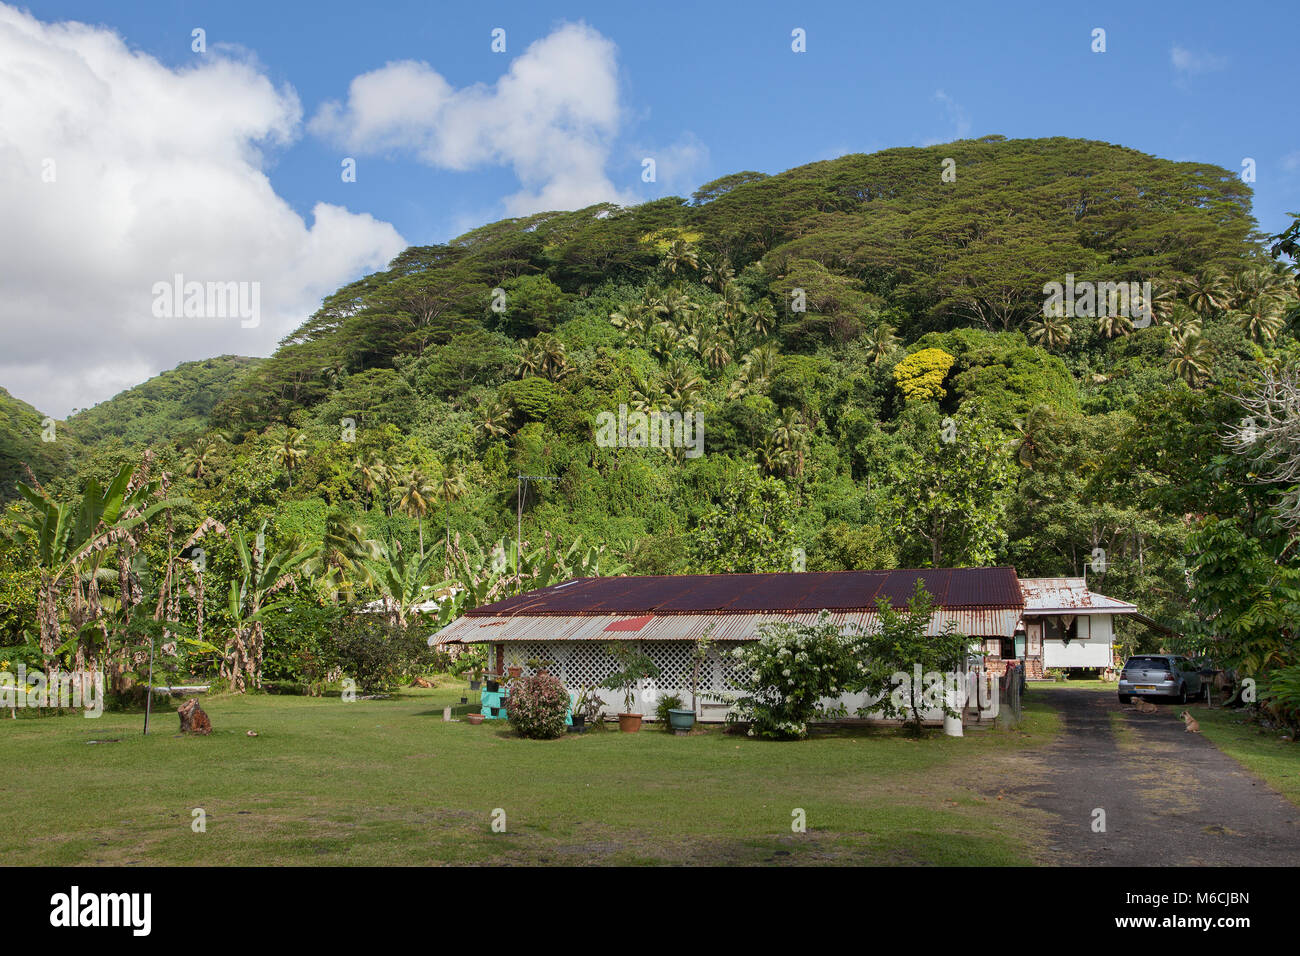 Maison typique, isolé, hill, green, Tahiti, Polynésie Française Banque D'Images